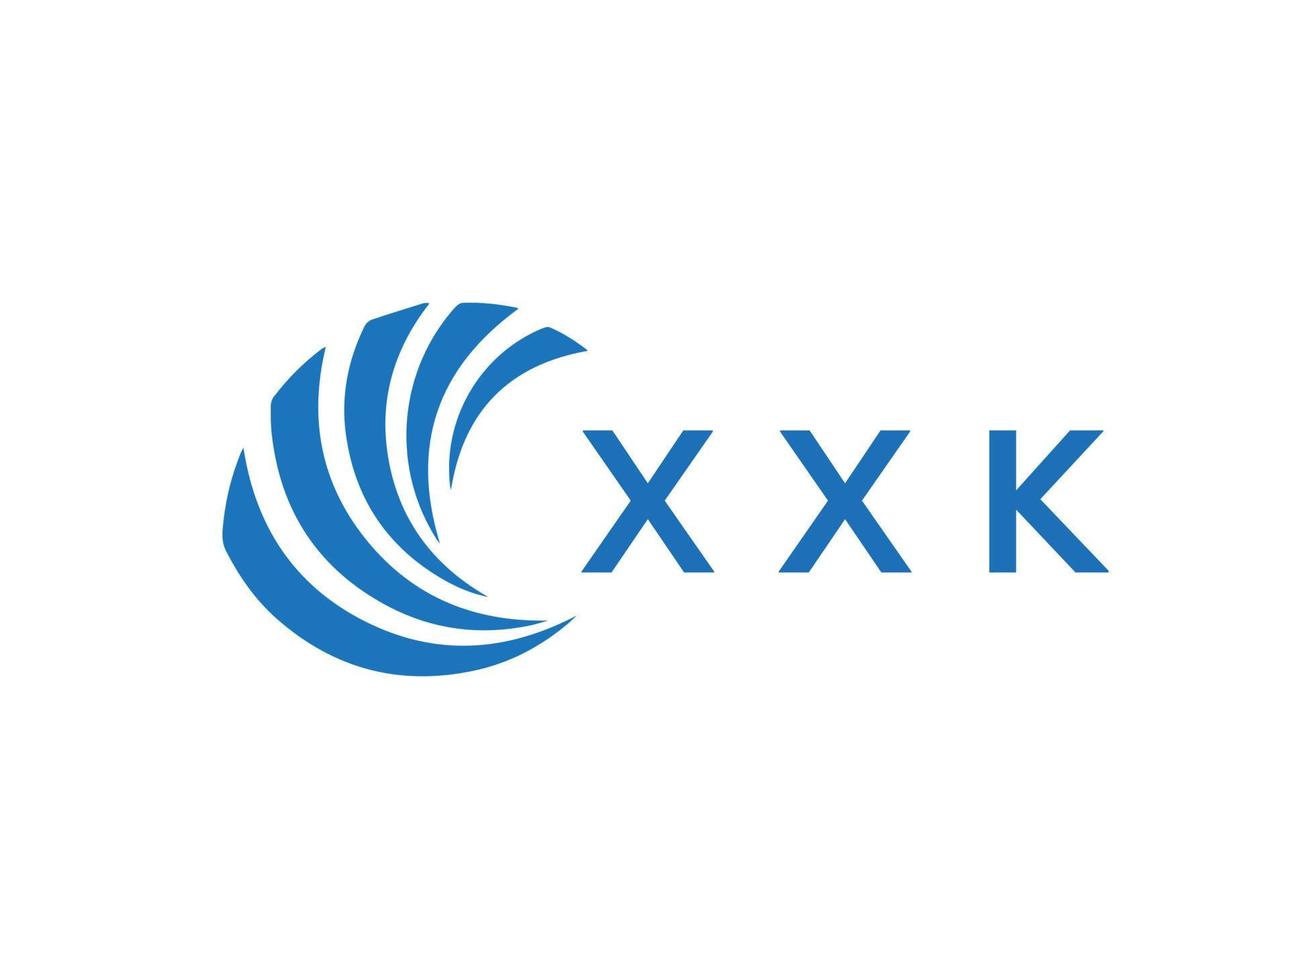 XXK letter logo design on white background. XXK creative circle letter logo concept. XXK letter design. vector